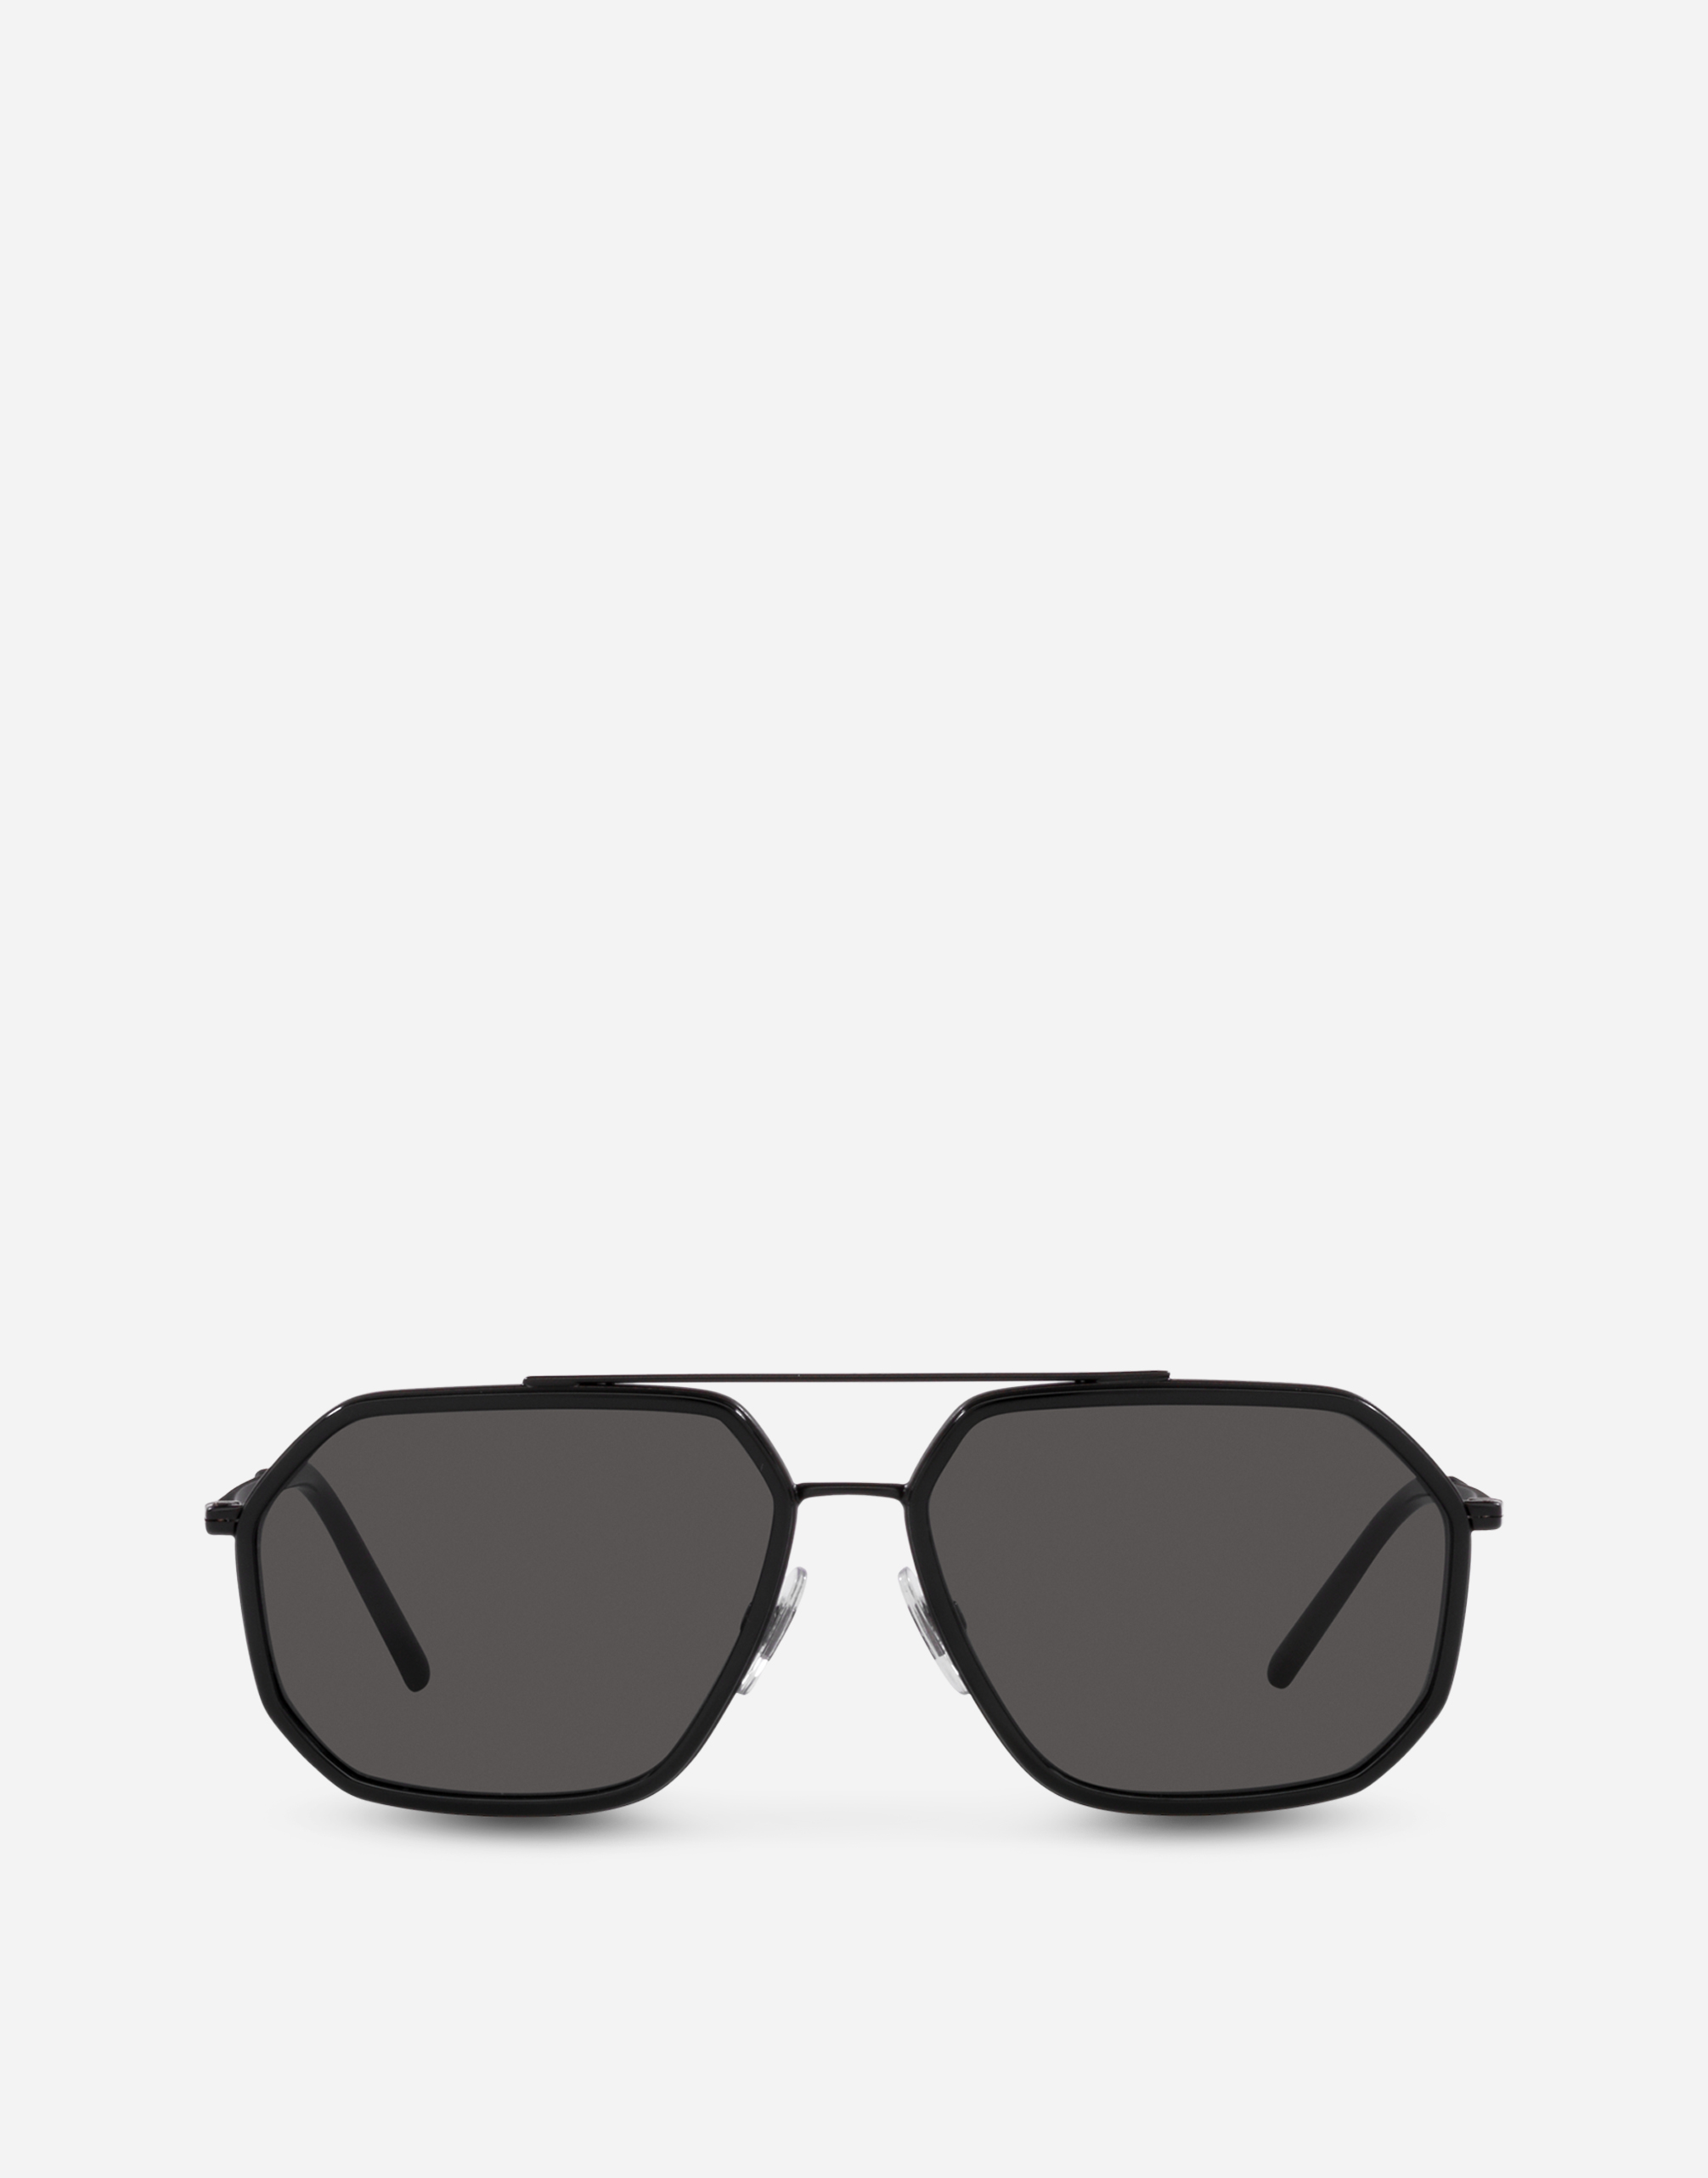 Gros grain sunglasses in Black matte and black